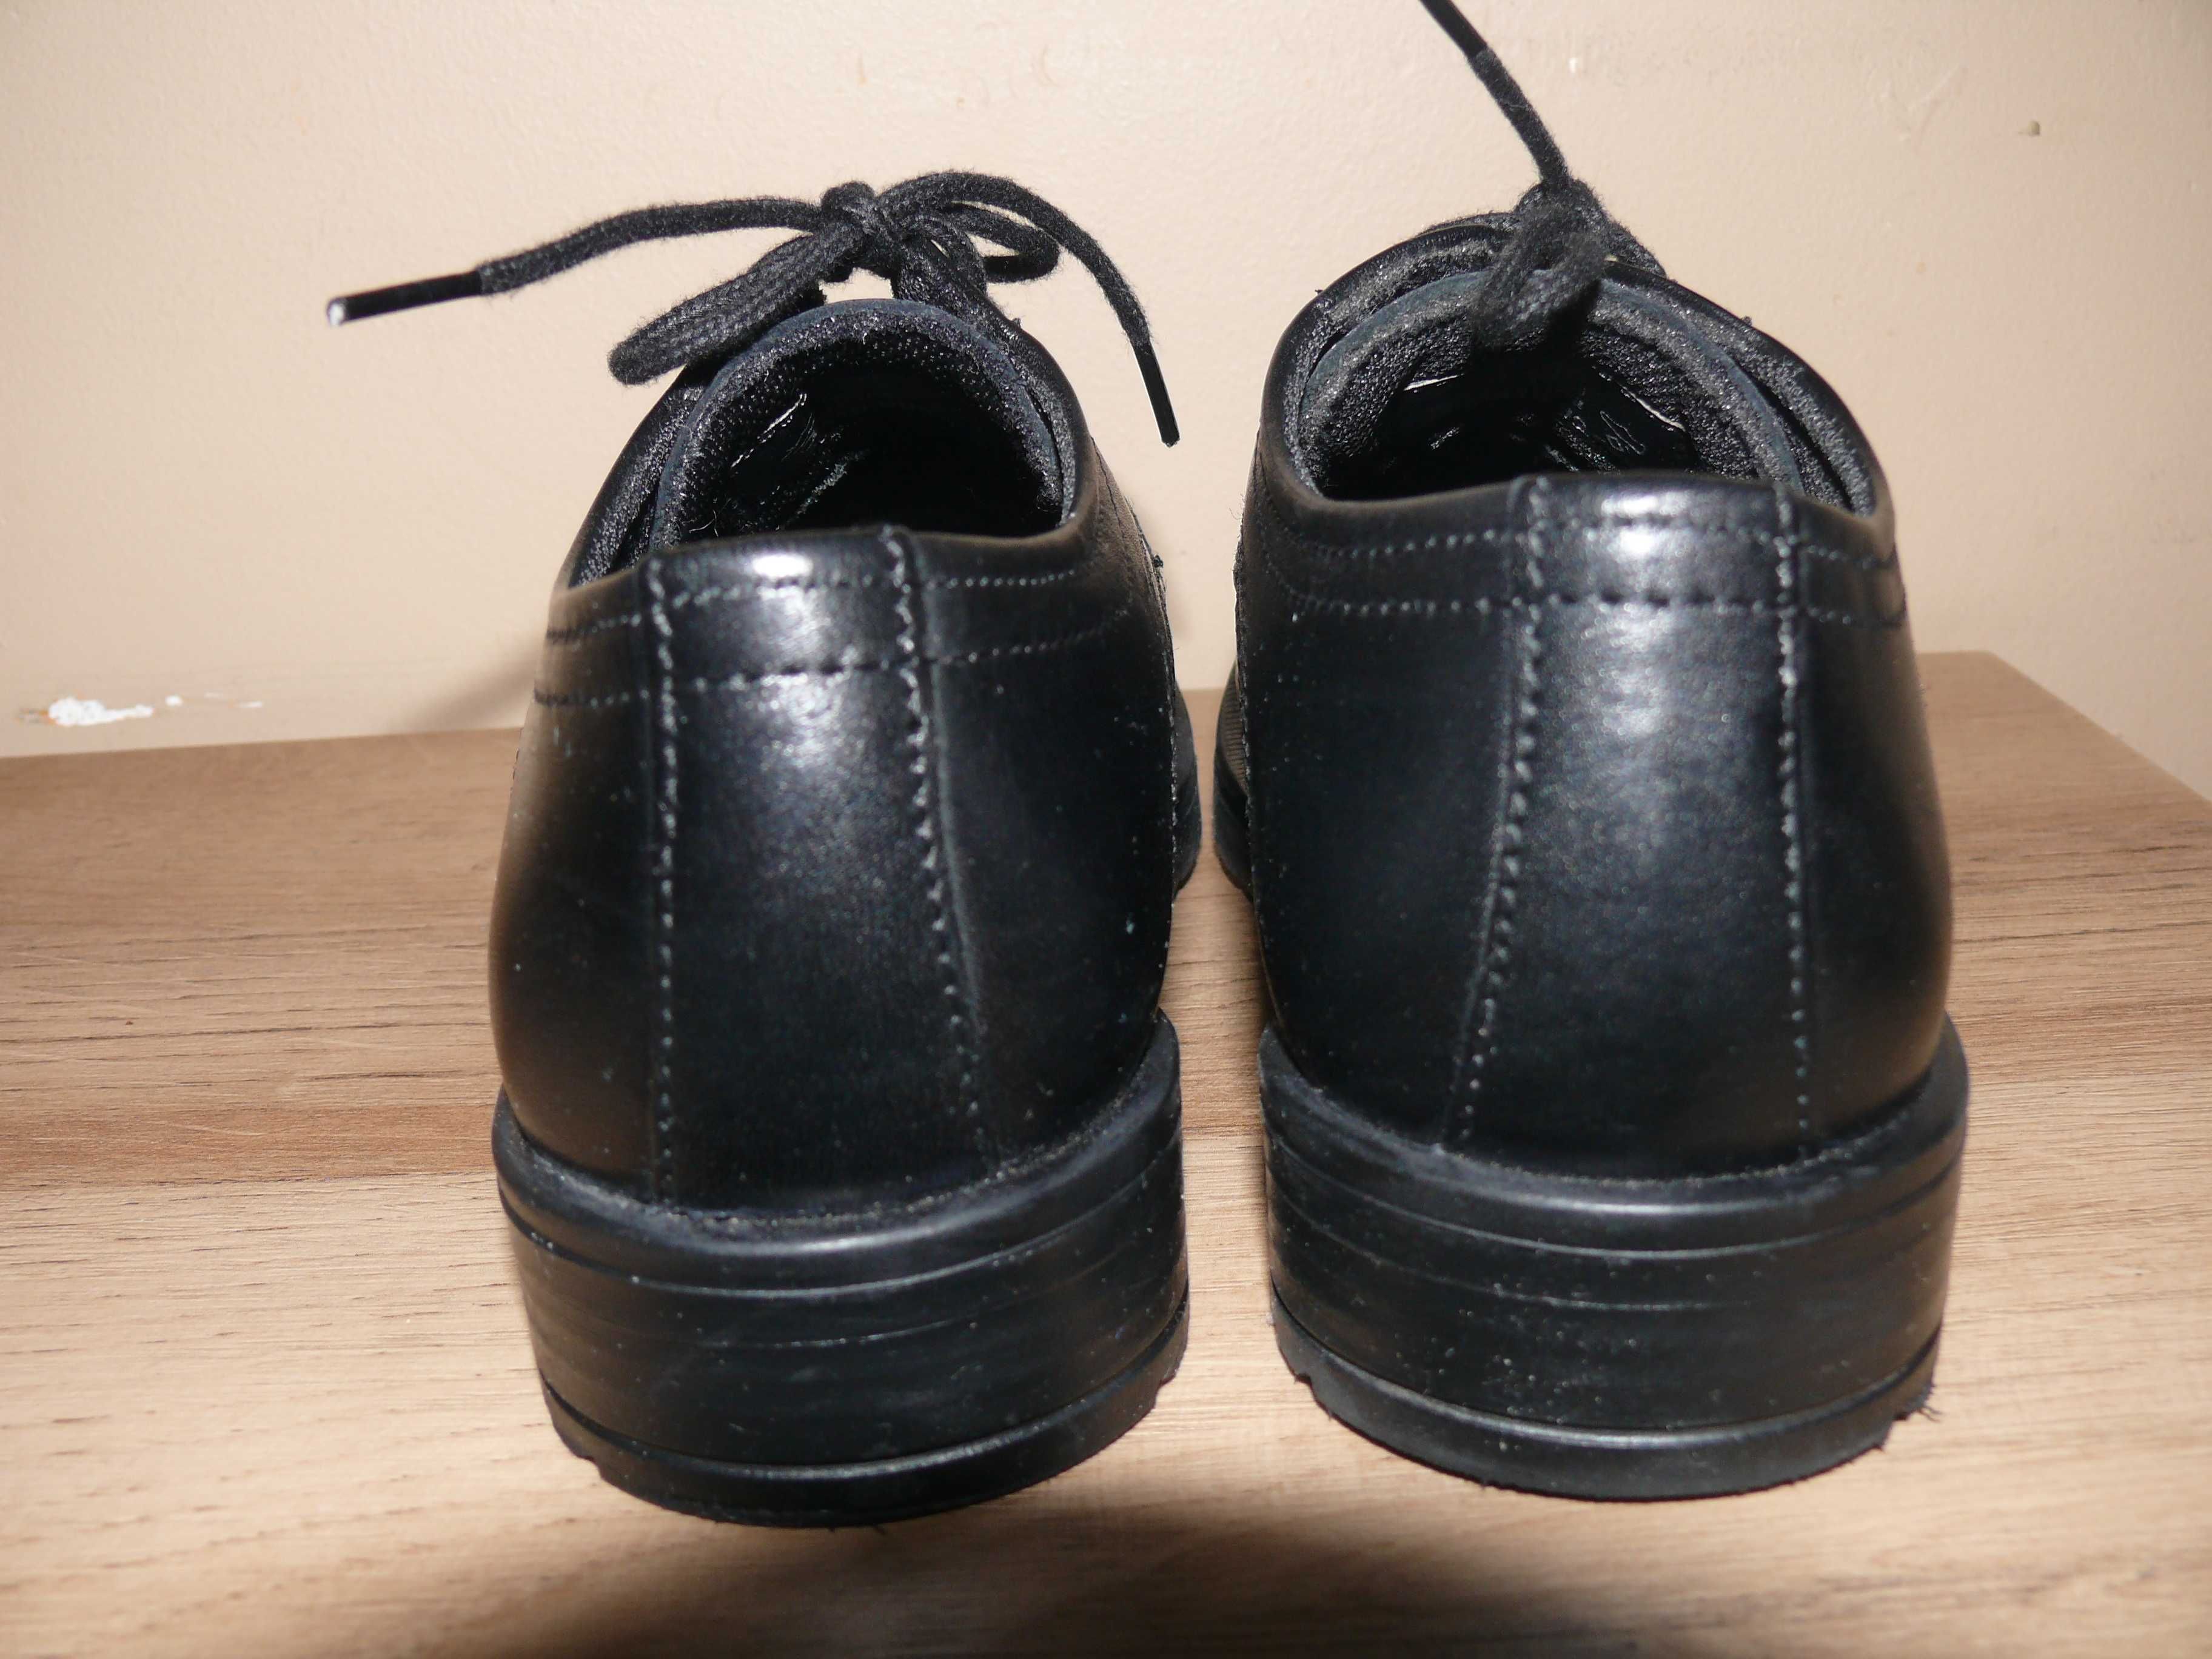 Pantofle chłopięce czarne r. 30 jak nowe skóra naturalna